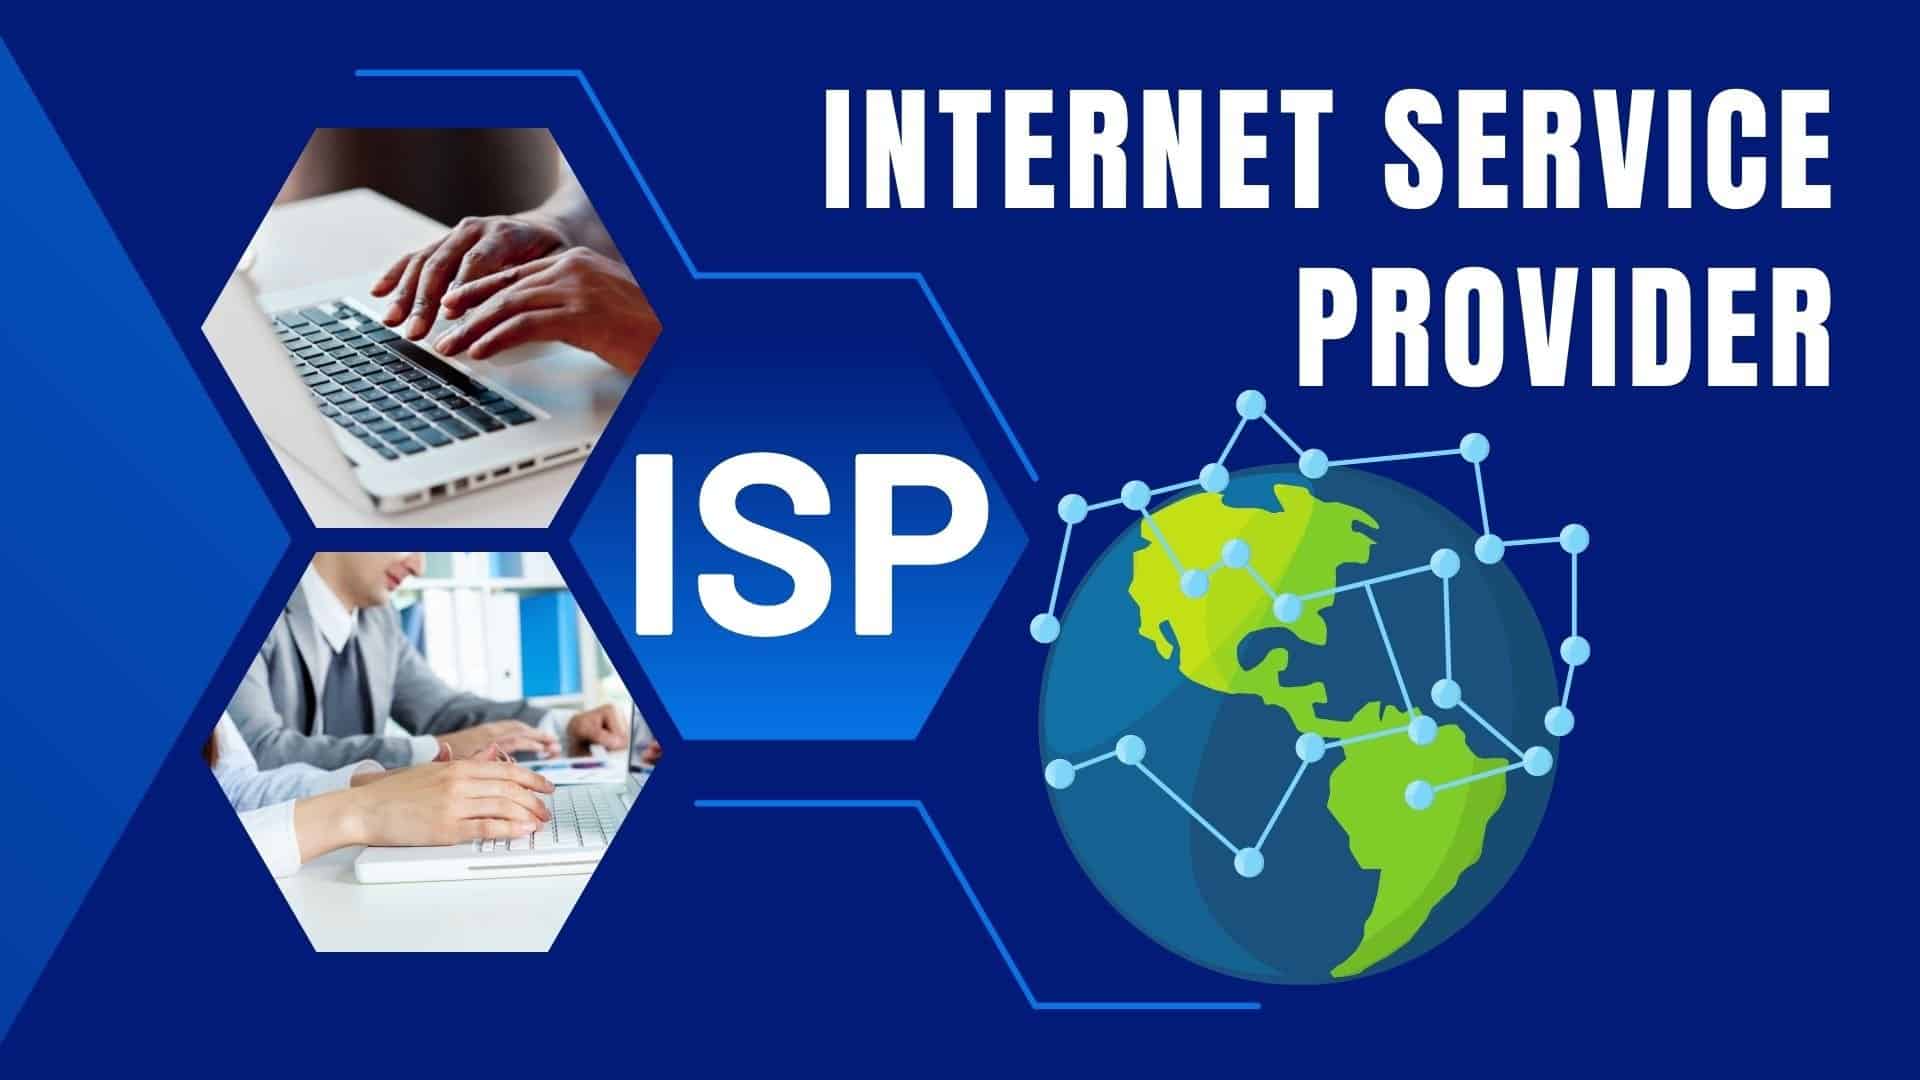 Nhà cung cấp dịch vụ Internet (ISP)